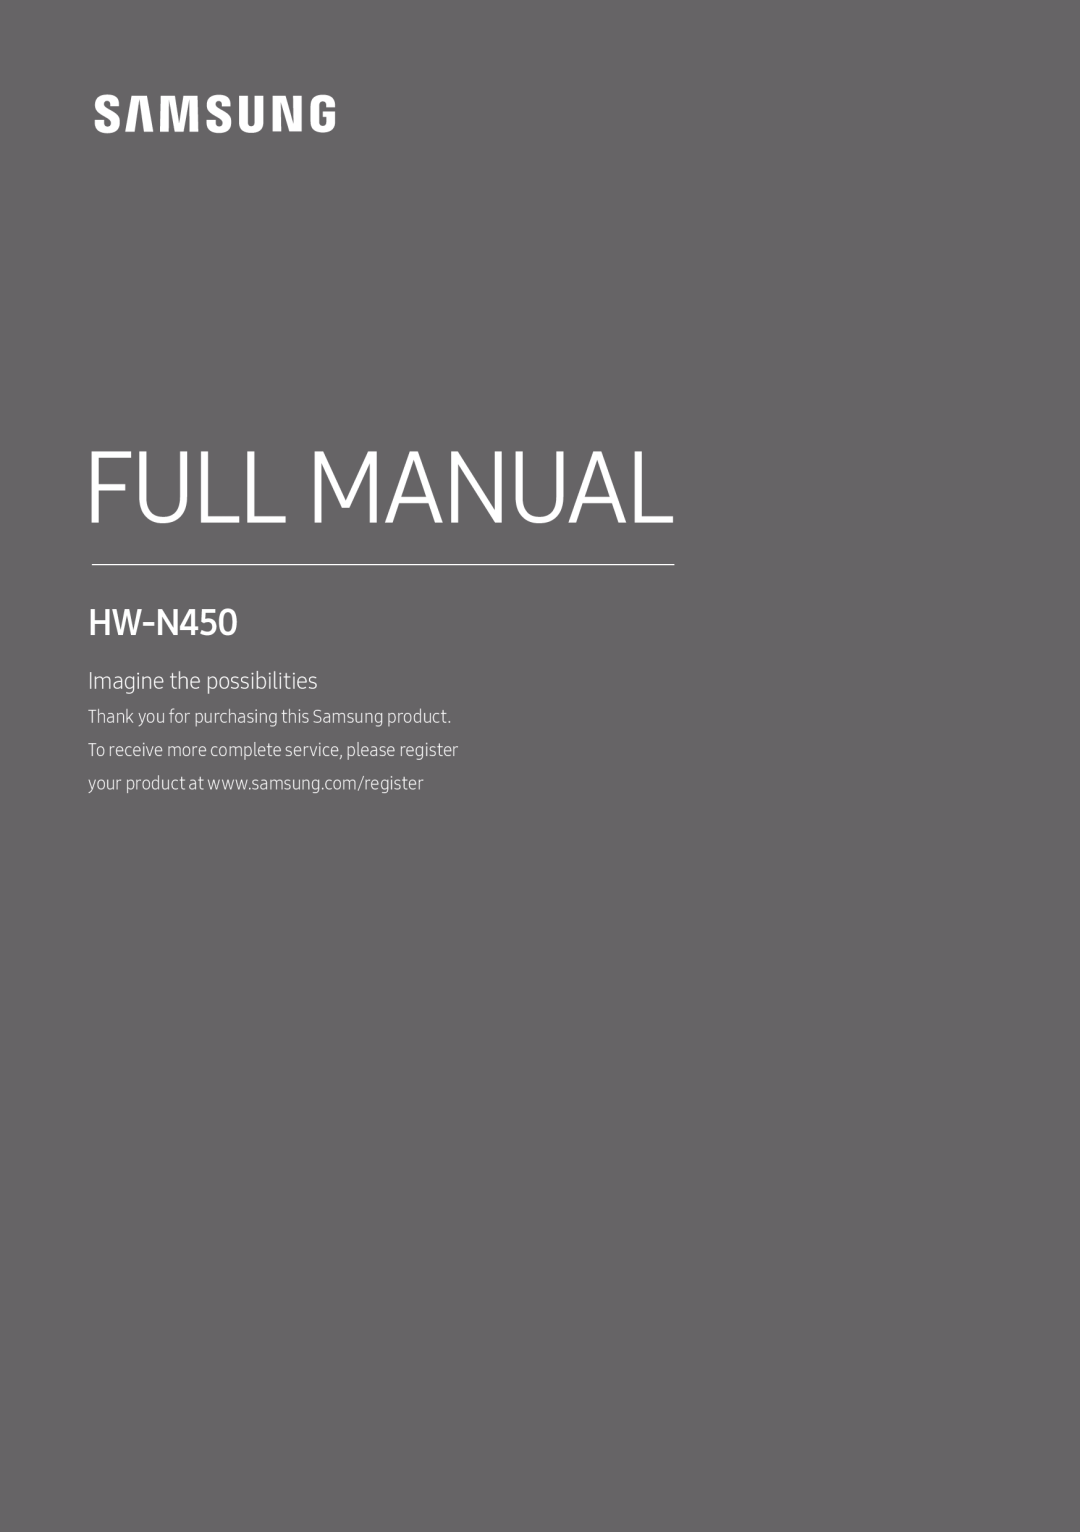 HW-N450 Standard HW-N450